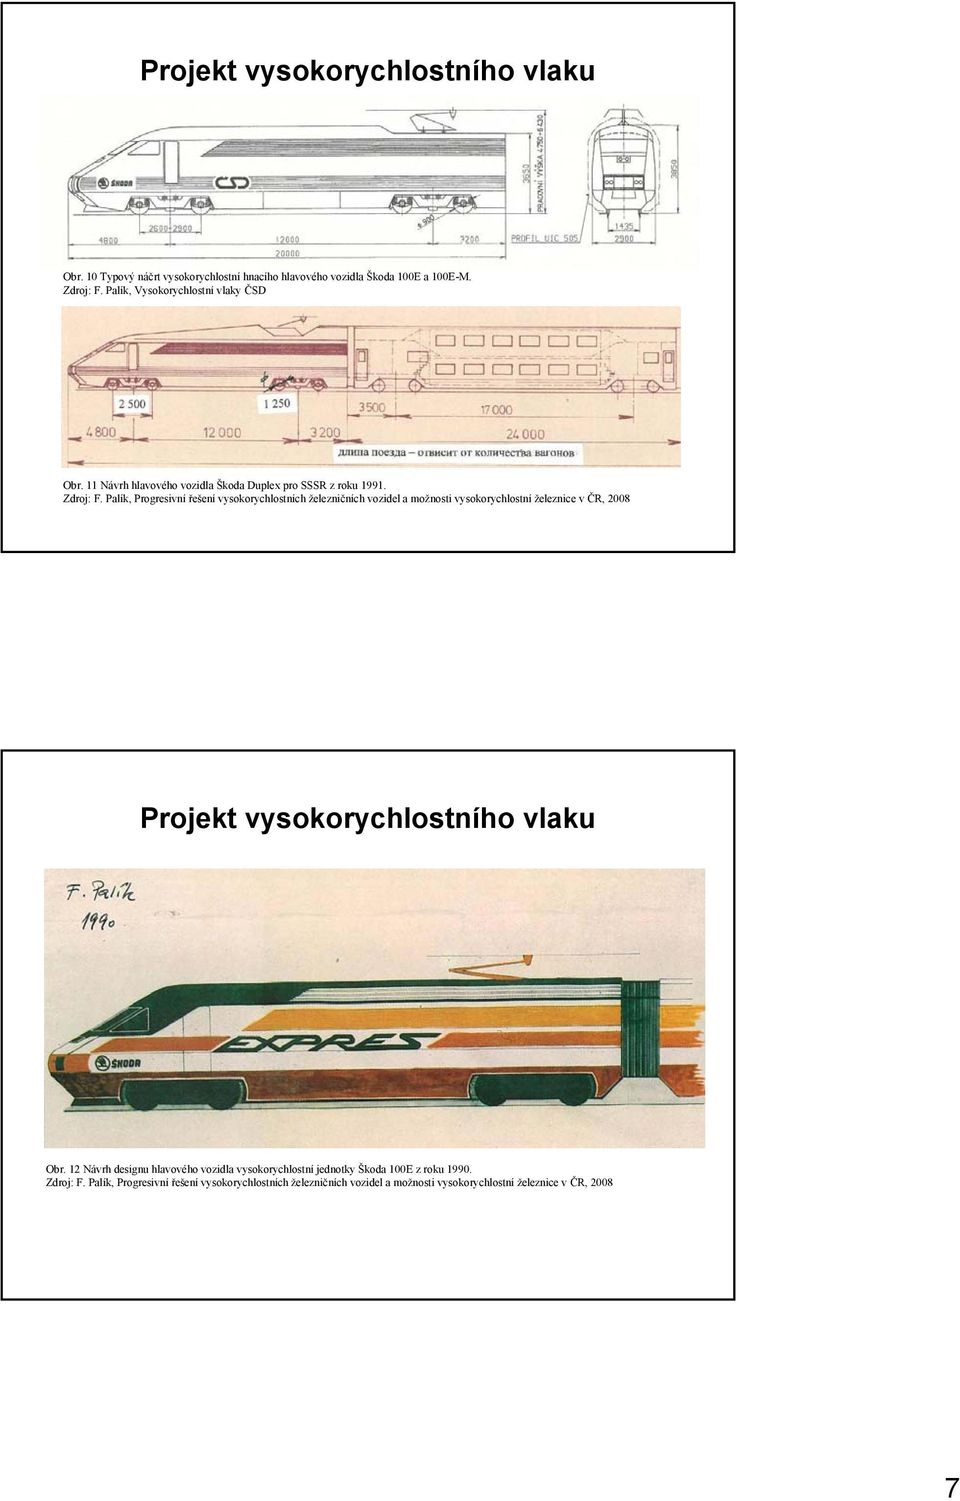 Palík, Progresivní řešení vysokorychlostních železničních vozidel a možnosti vysokorychlostní železnice v ČR, 2008 Projekt